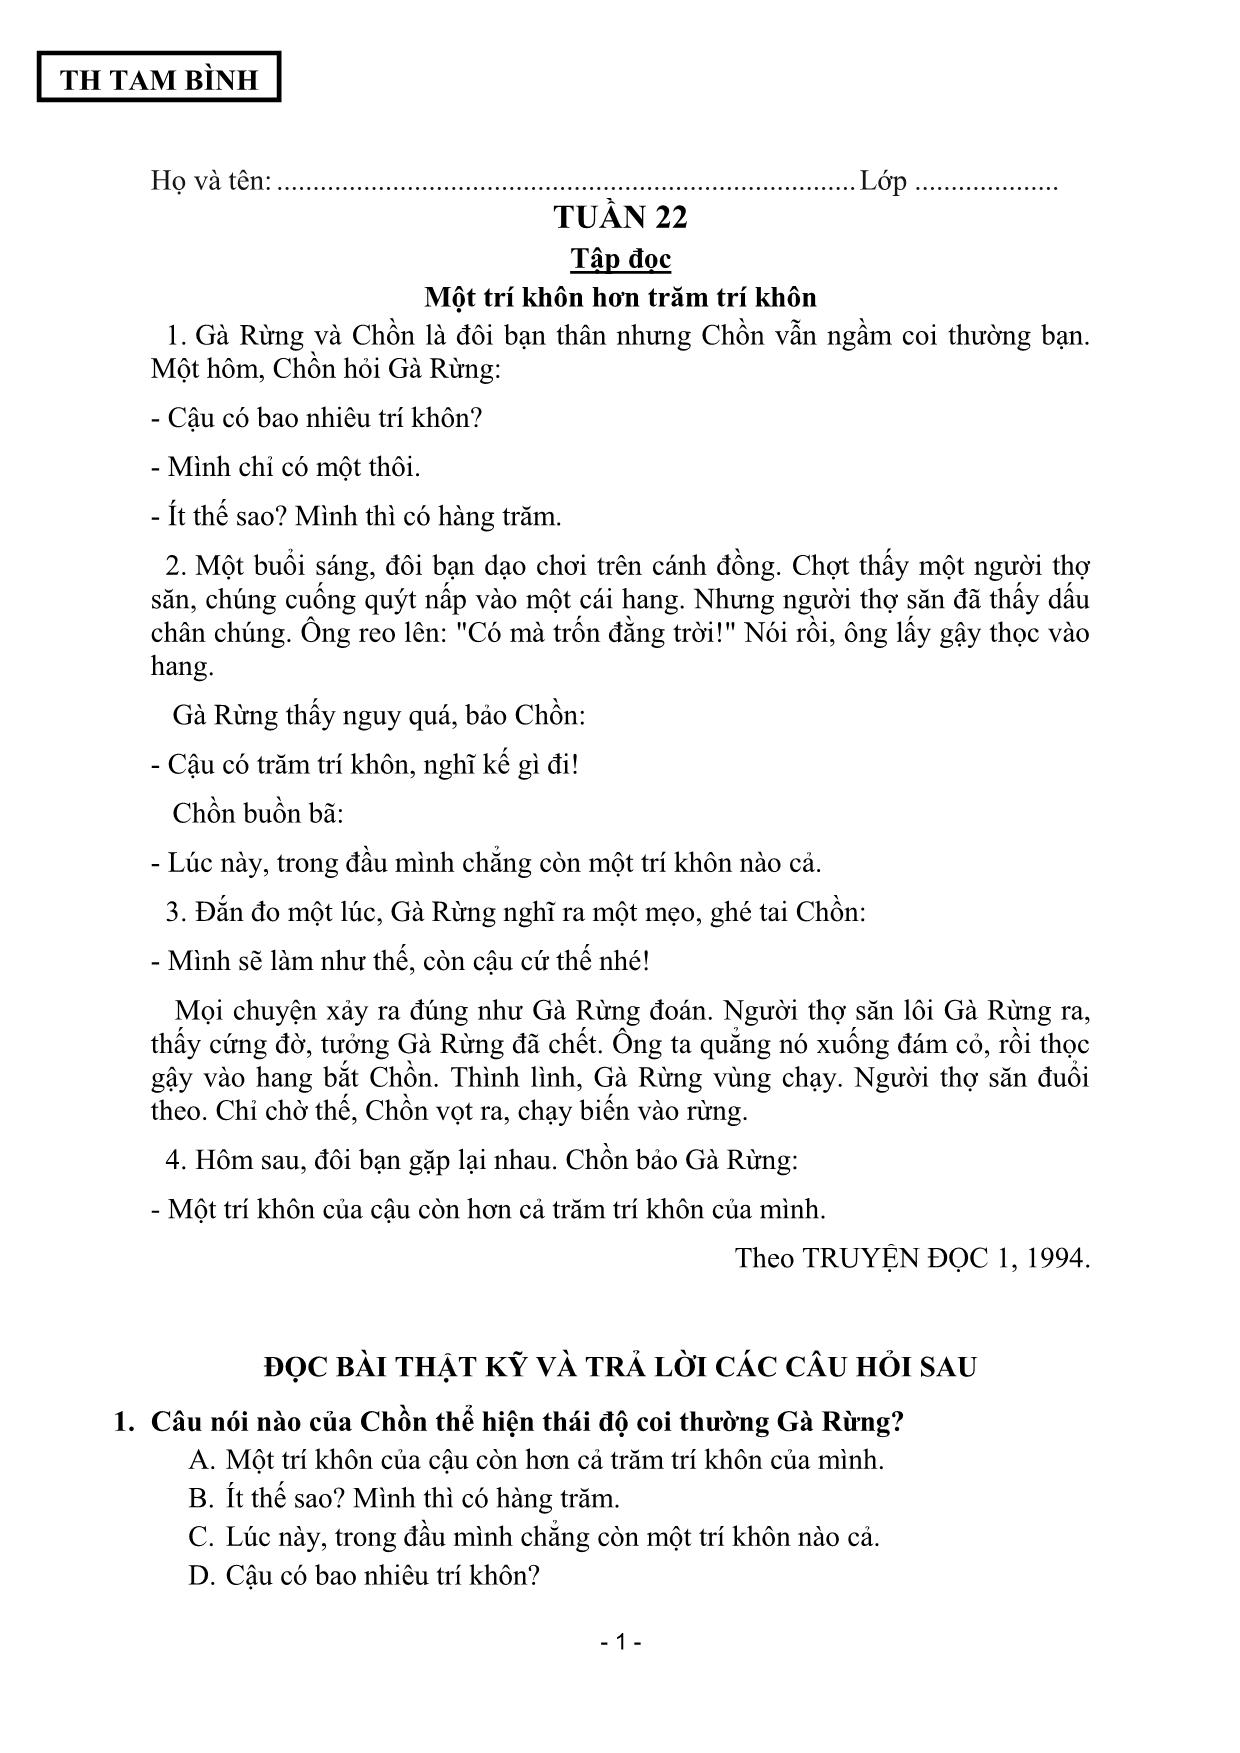 Đề cương ôn tập Tiếng Việt 2 - Tuần 22 trang 1